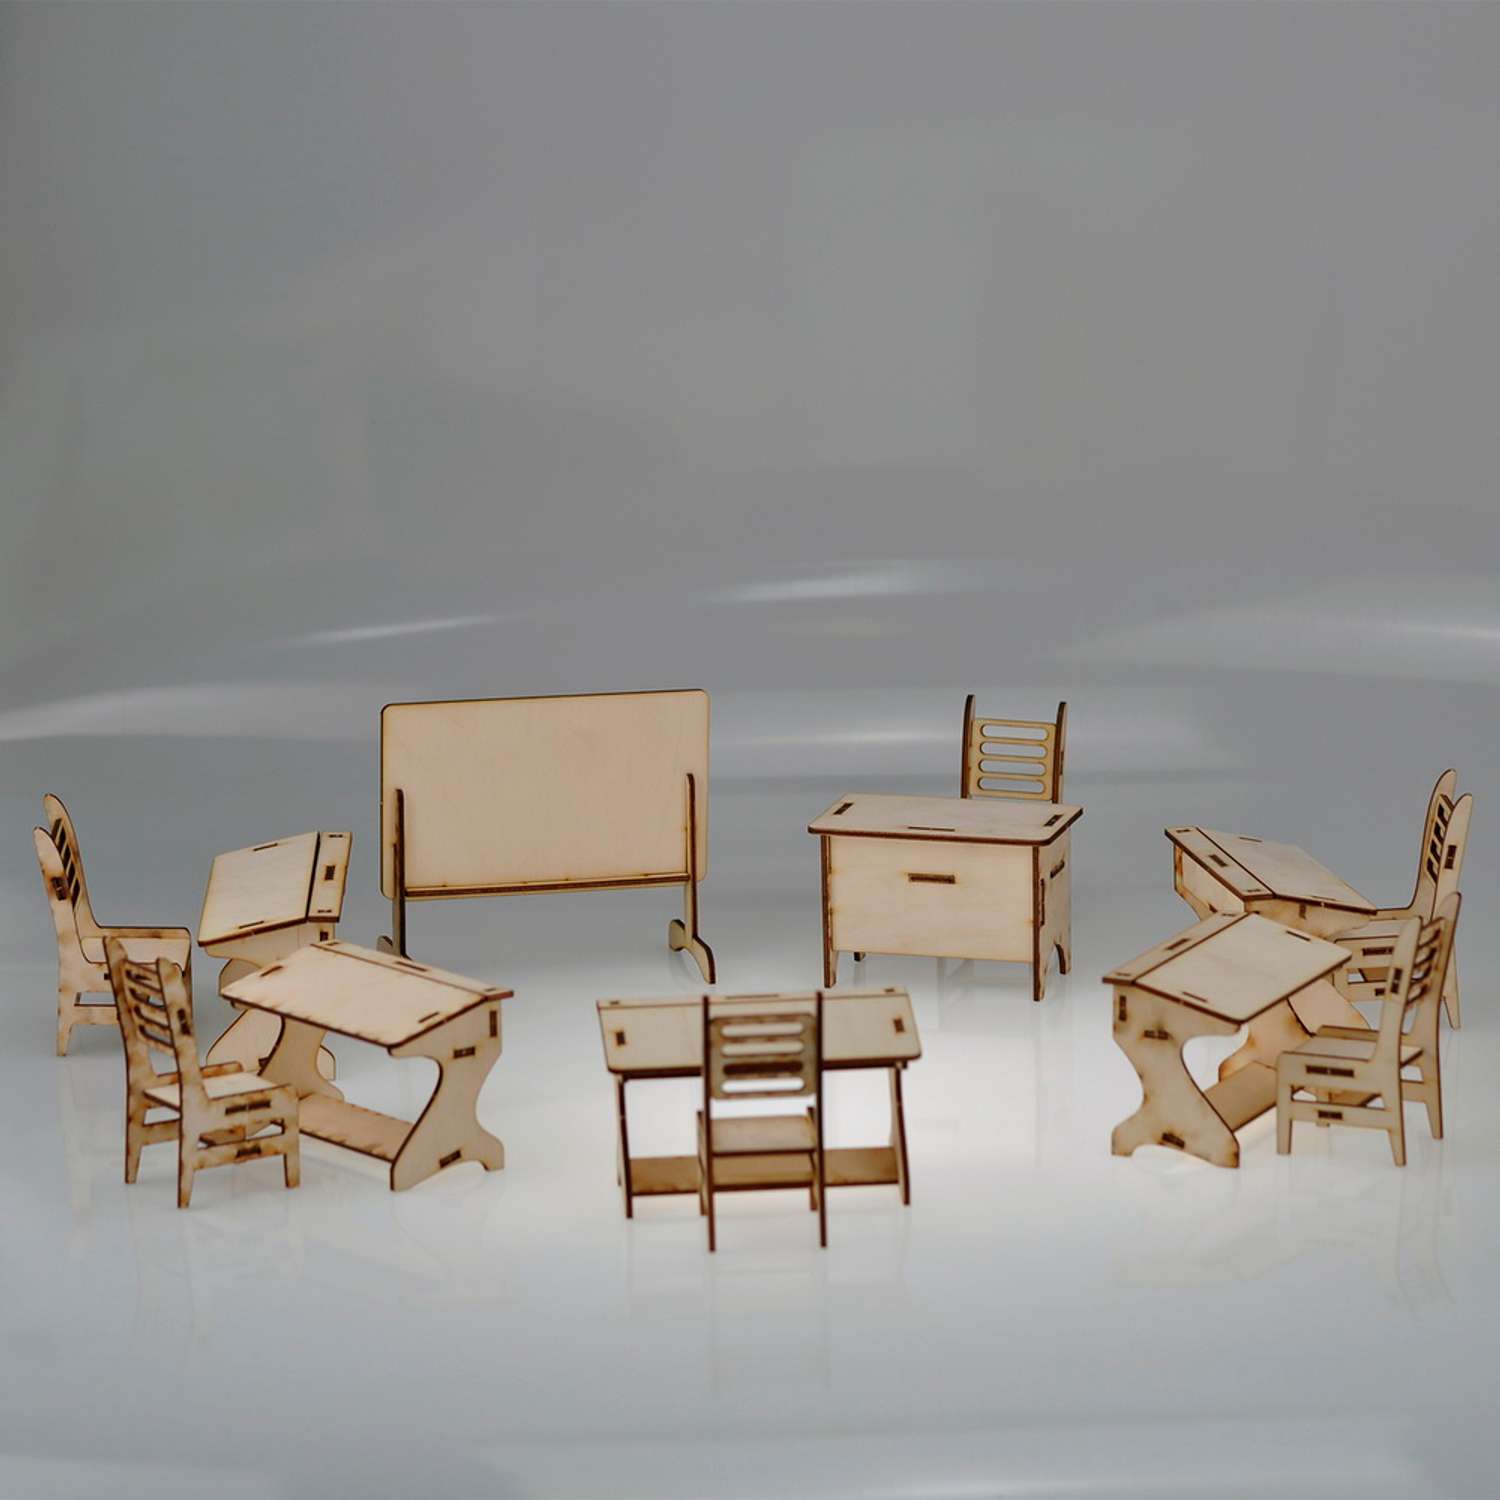 Игровой деревянный класс Amazwood 5 парт- учительский стол - доска - 6 стульев - 6 кукол AW1006 - фото 12